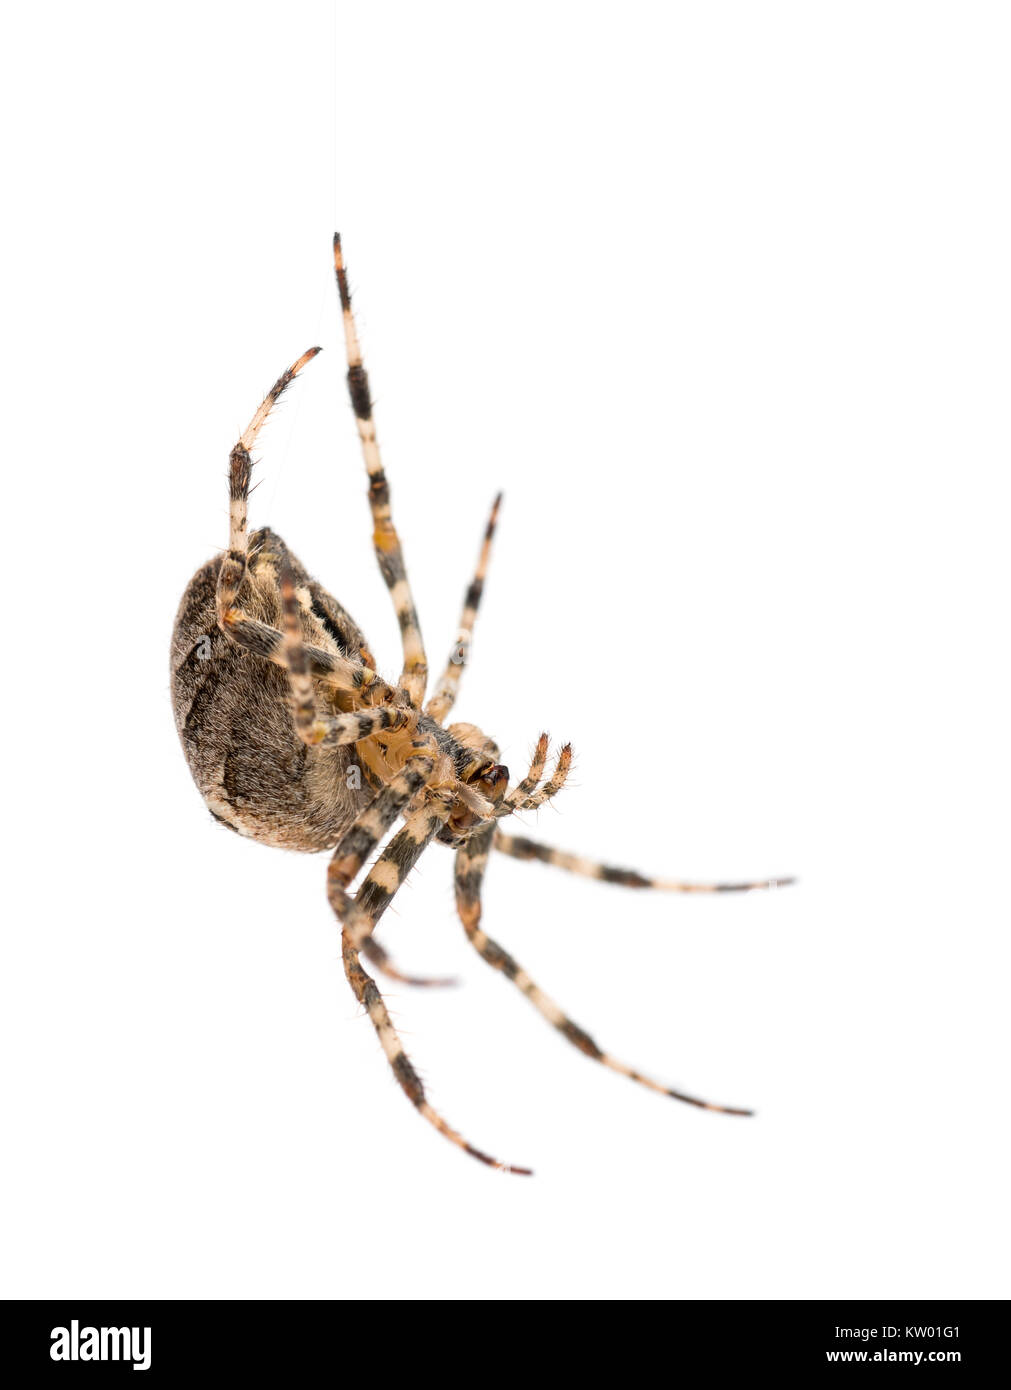 Giardino europeo, ragno Araneus diadematus, appeso alla stringa di seta contro uno sfondo bianco Foto Stock